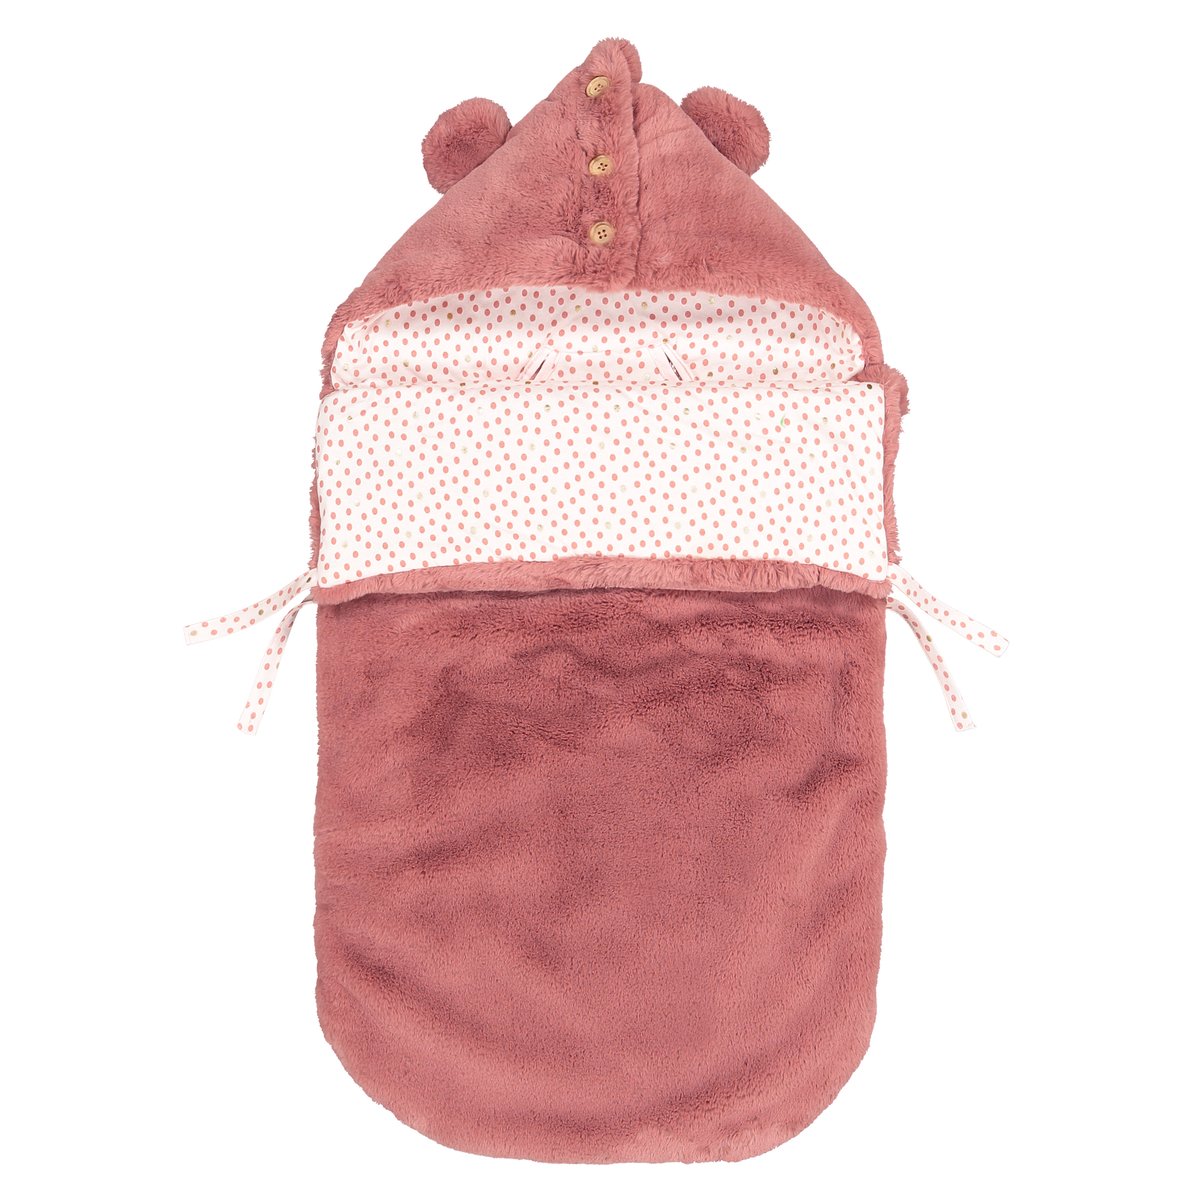 Конверт La Redoute Для новорожденного с капюшоном из искусственного меха единый размер розовый